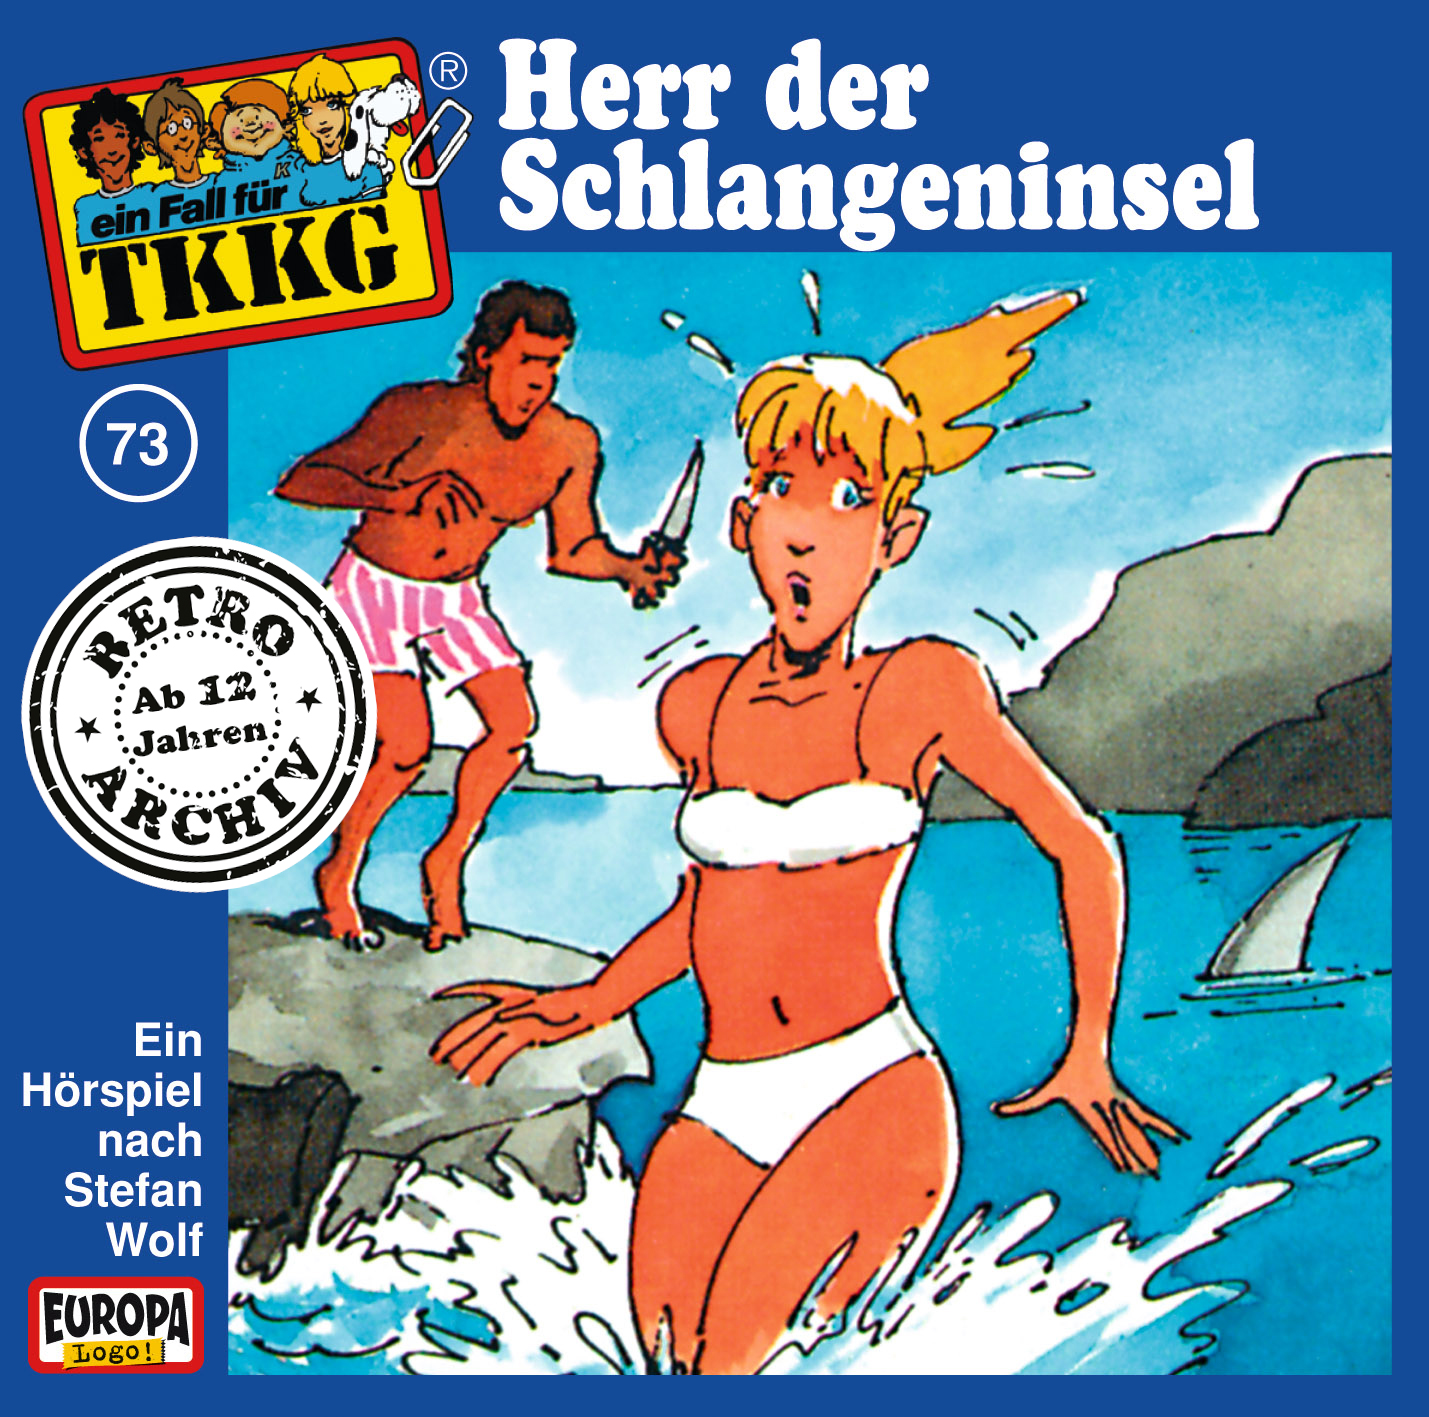 TKKG Retro-Archiv - Herr der Schlangeninsel